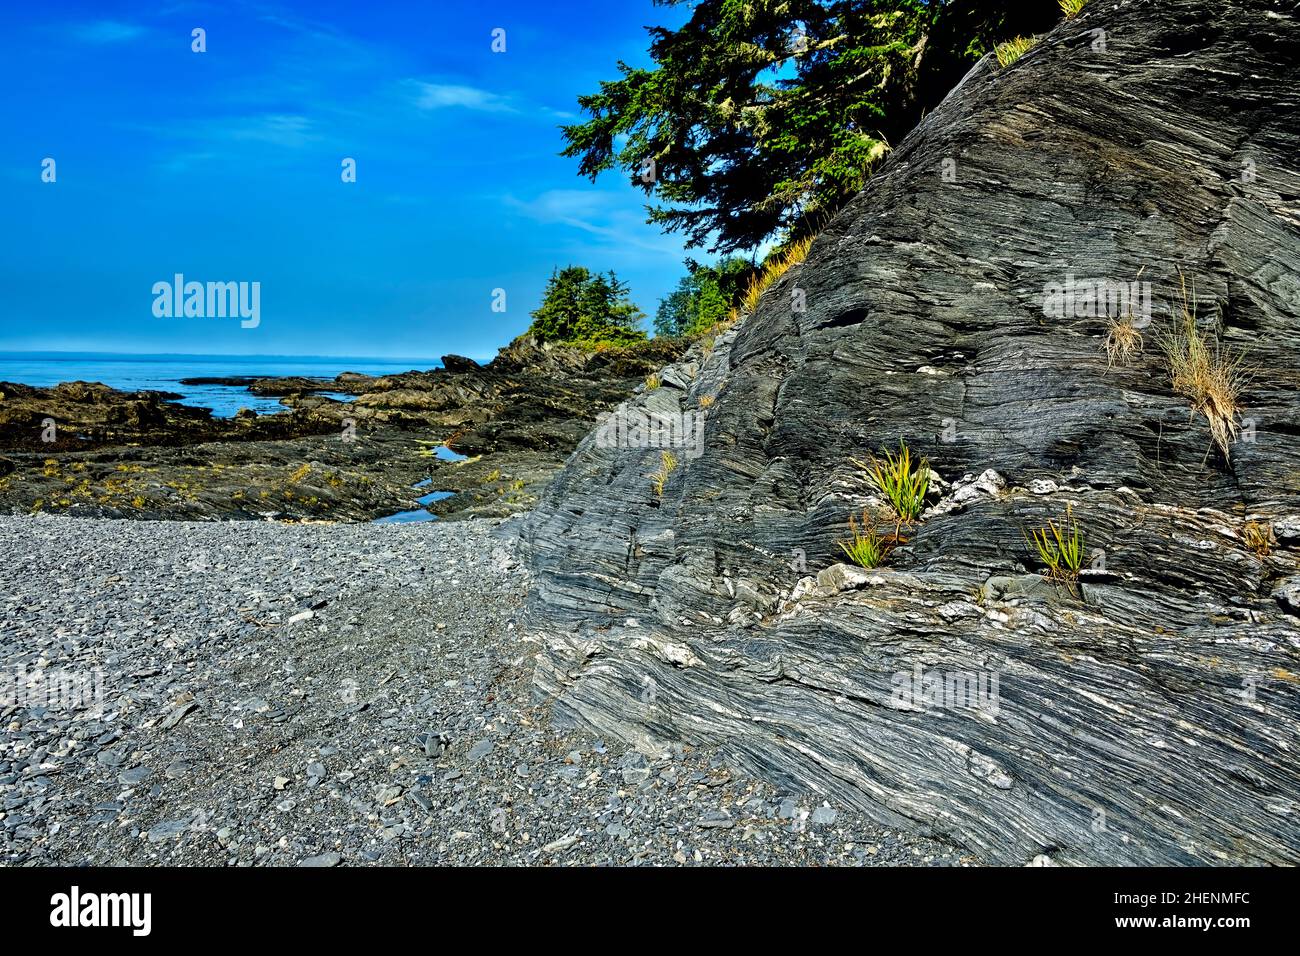 Un'immagine paesaggistica di una spiaggia rocciosa sull'aspra costa occidentale dell'Isola di Vancouver che guarda verso l'Oceano Pacifico. Foto Stock